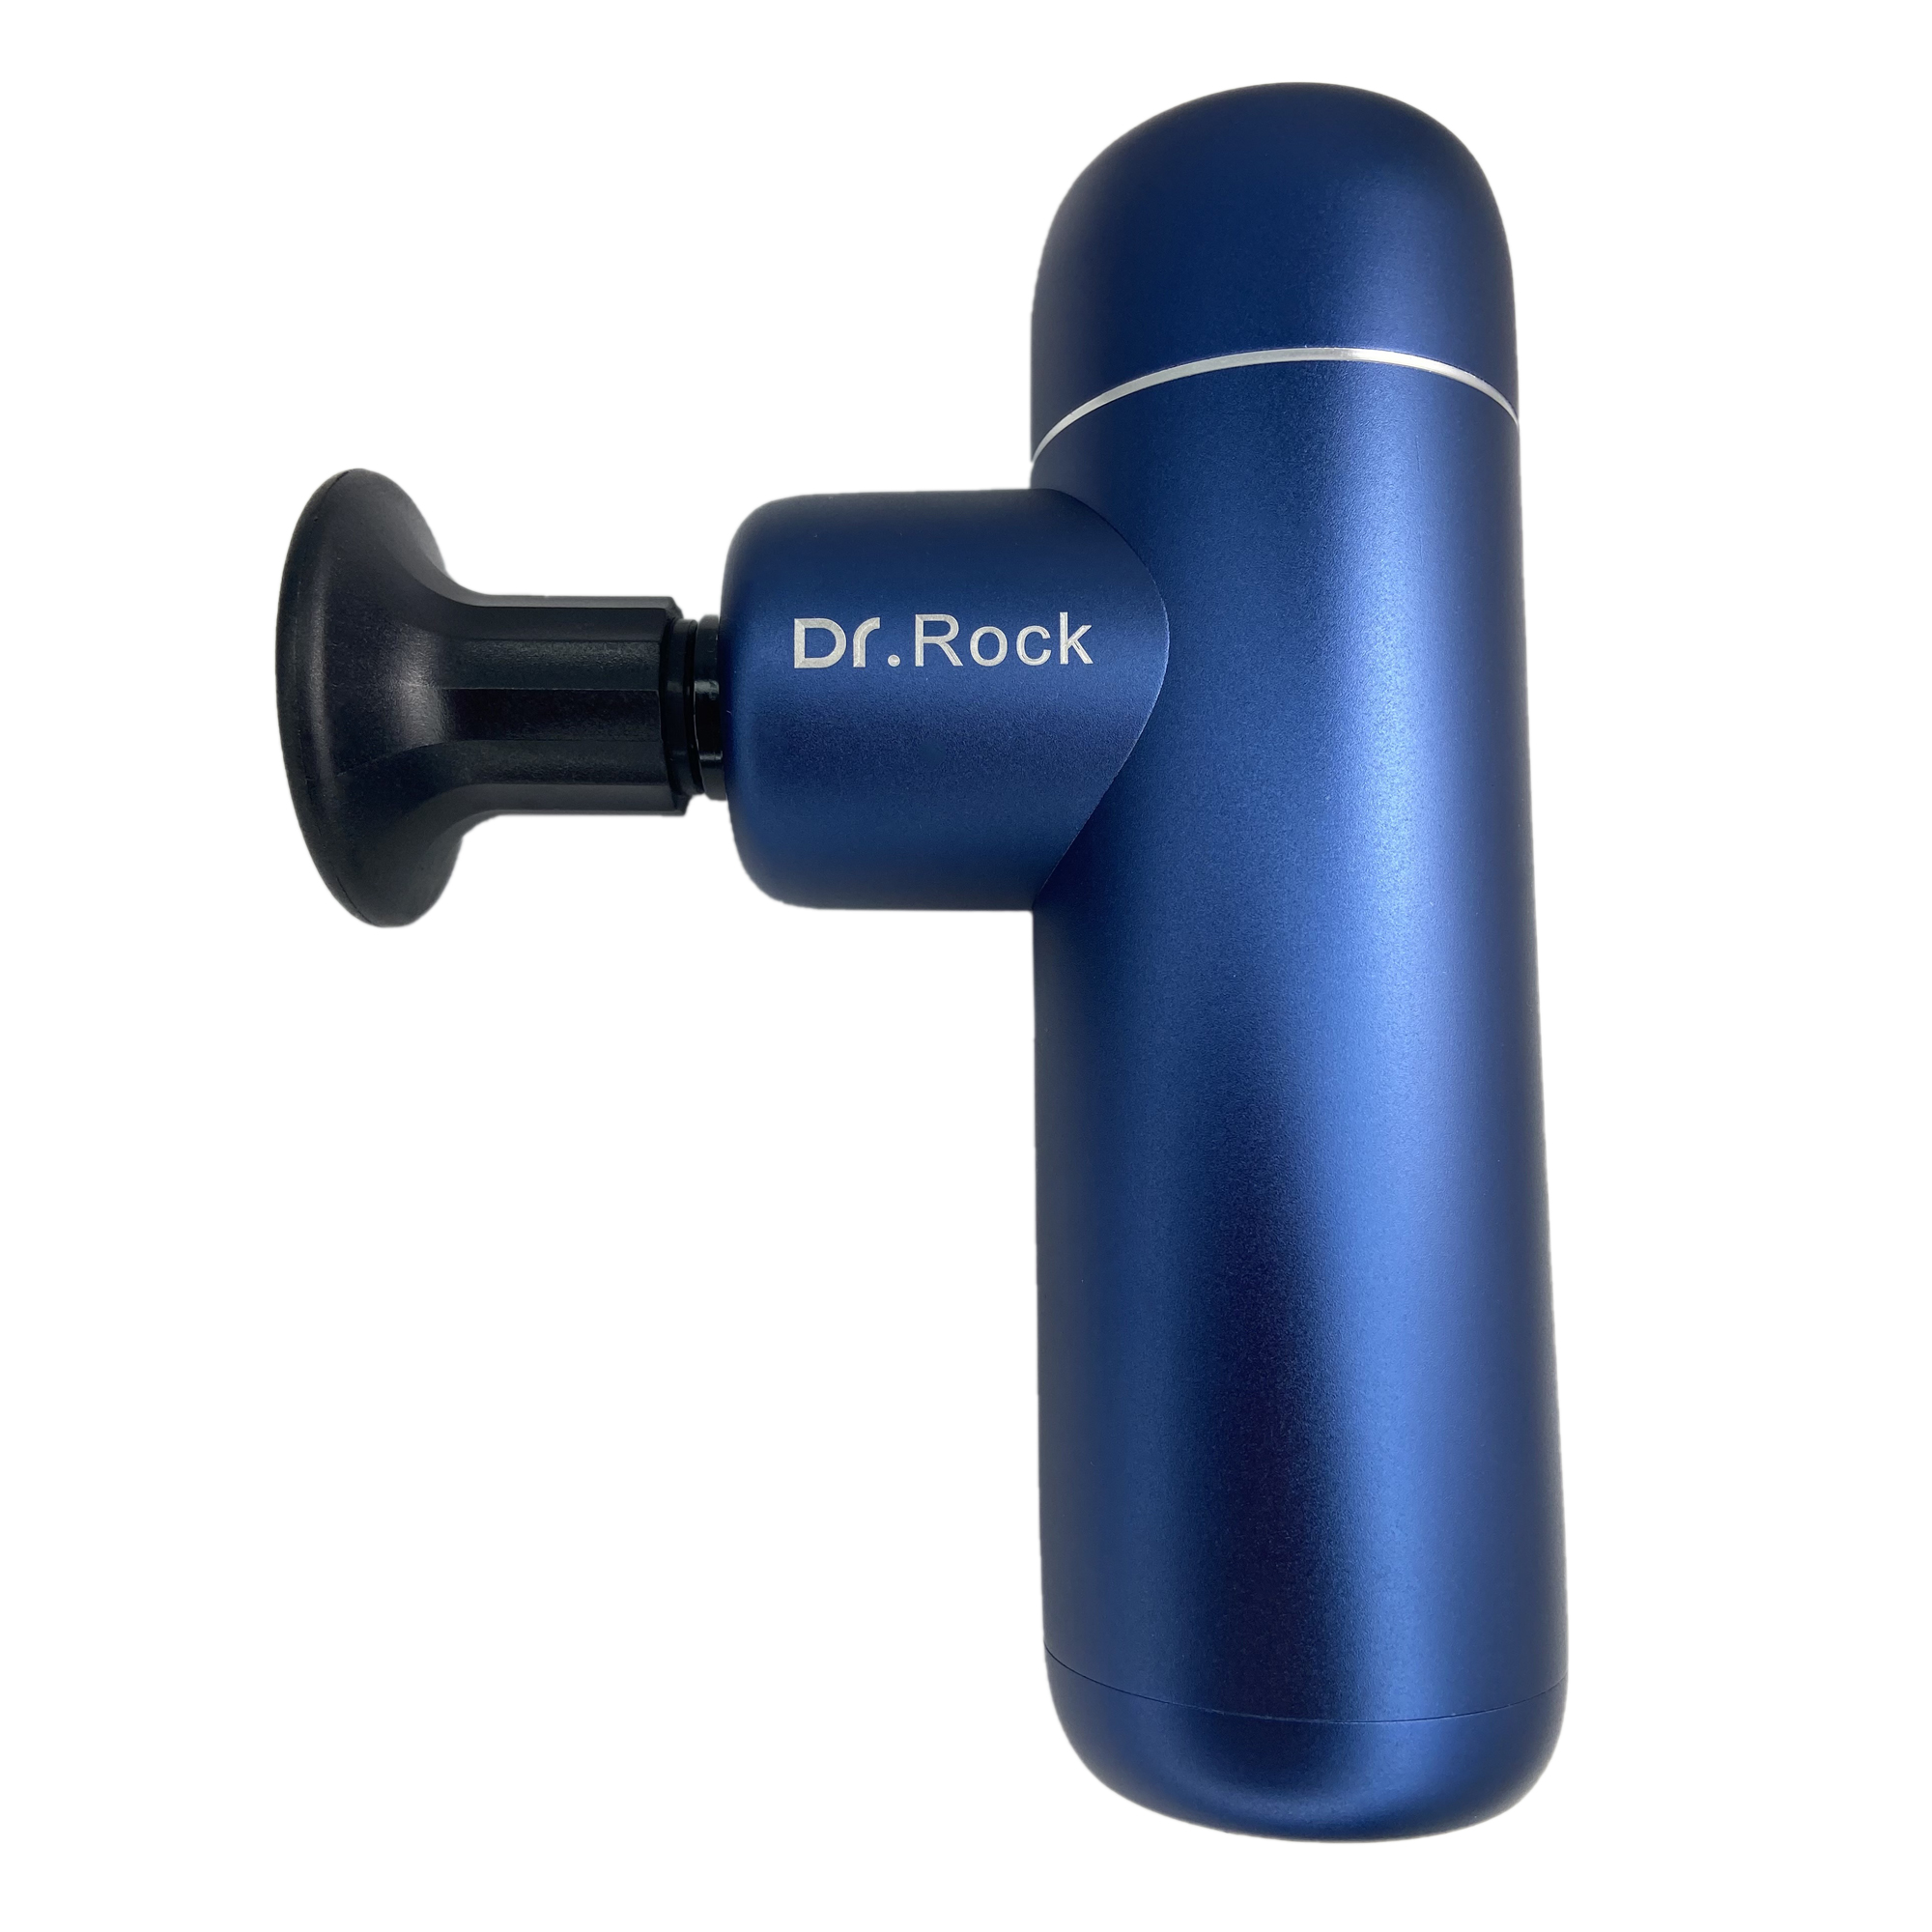 Dr Rock Mini 2S Massage Gun